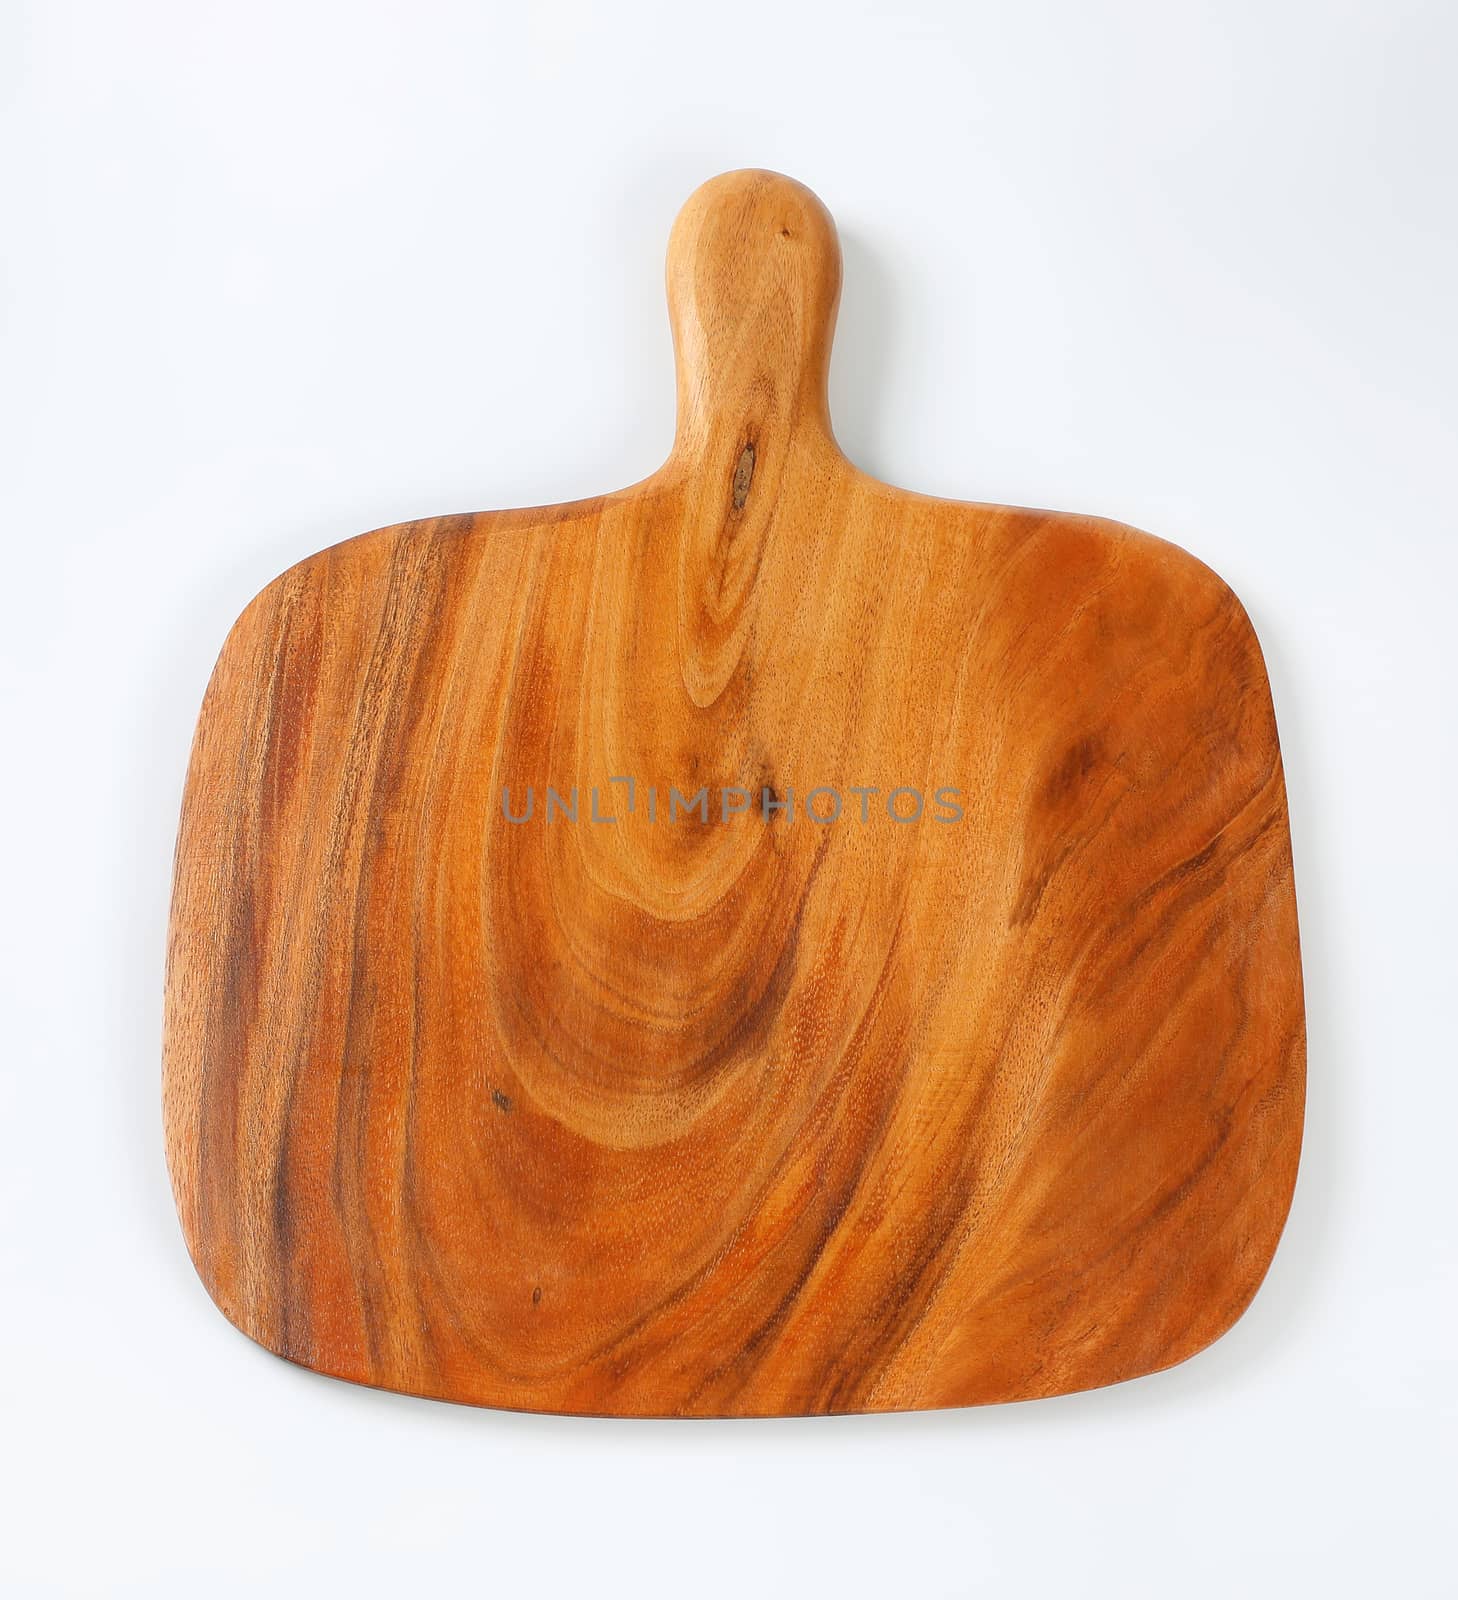 wooden cutting board by Digifoodstock